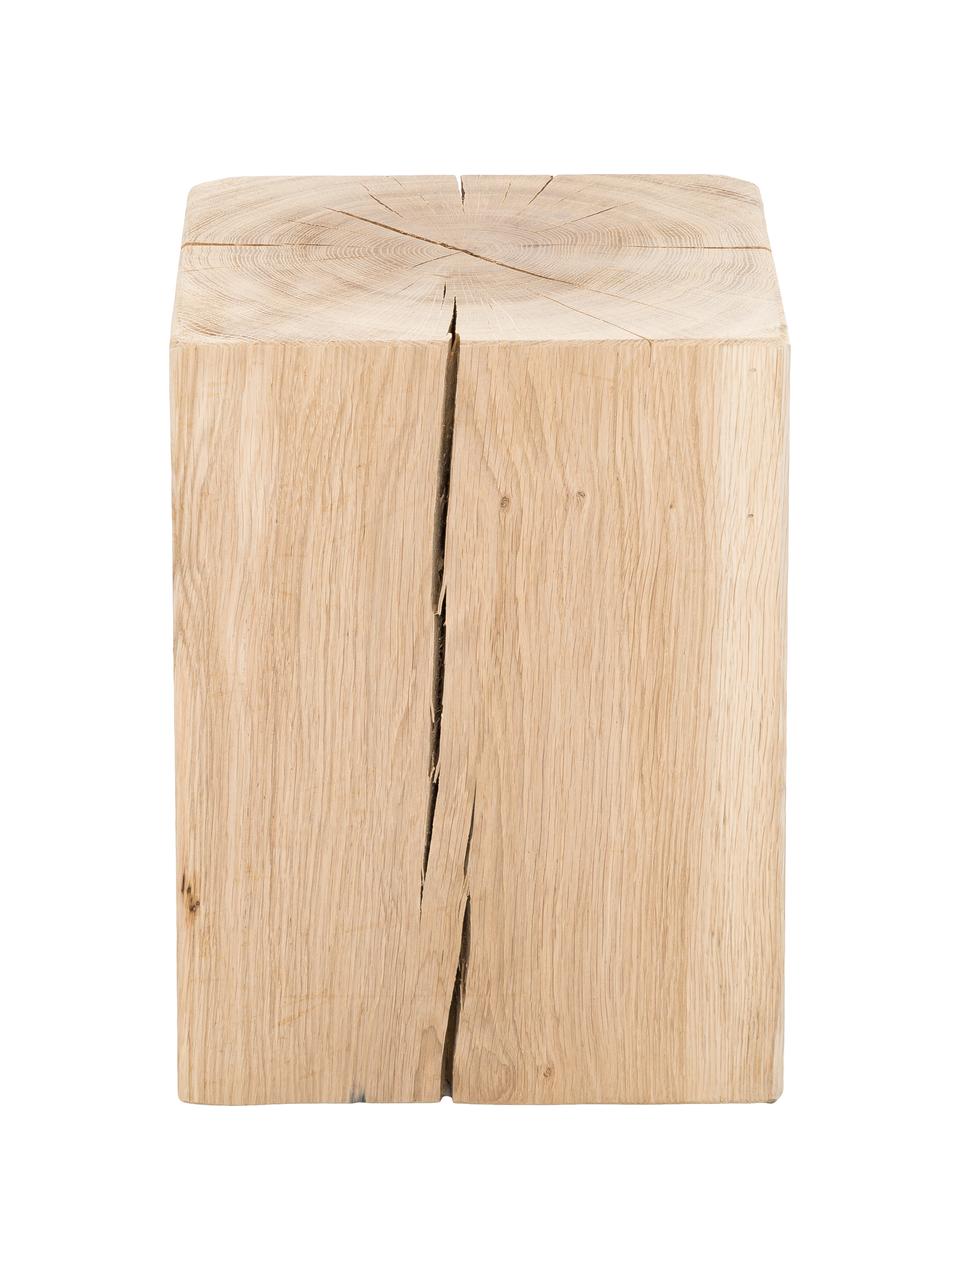 Tabouret bois de chêne massif Block, Bois de chêne, Bois de chêne, larg. 29 x haut. 40 cm